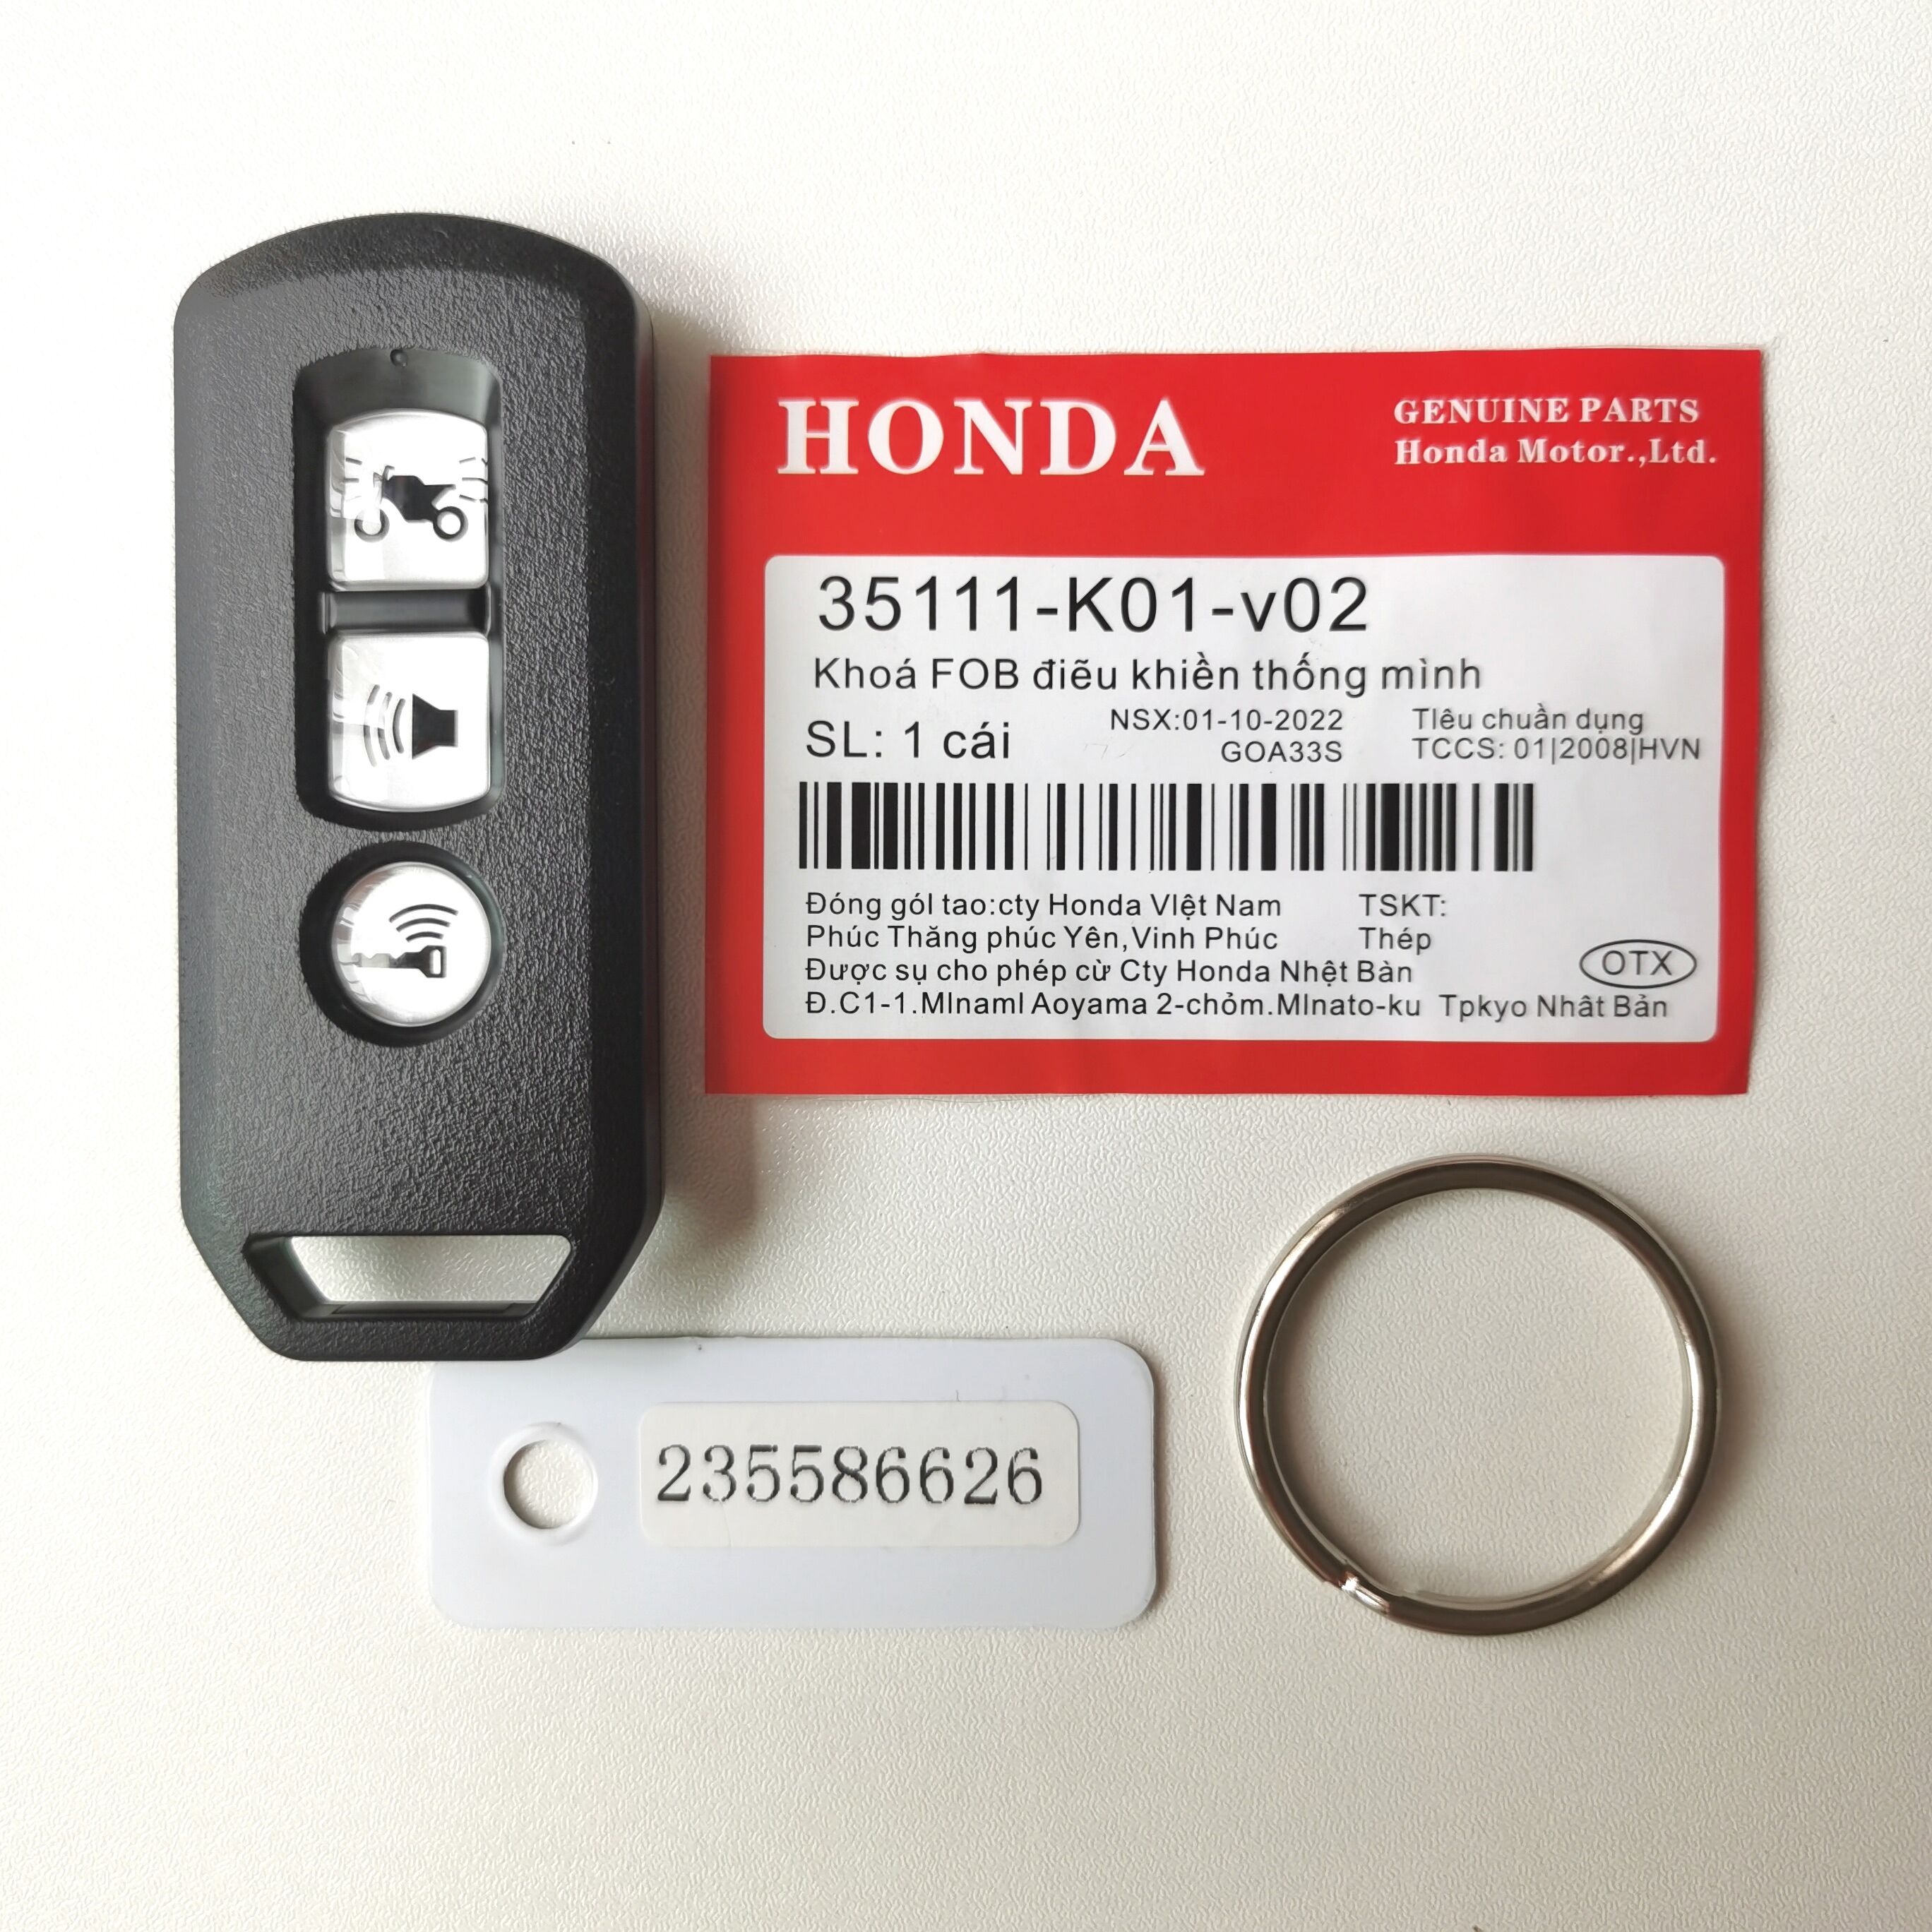 Original 433 MHz Smart Key for Honda Motorcycle -K96JO PCX150 - K01